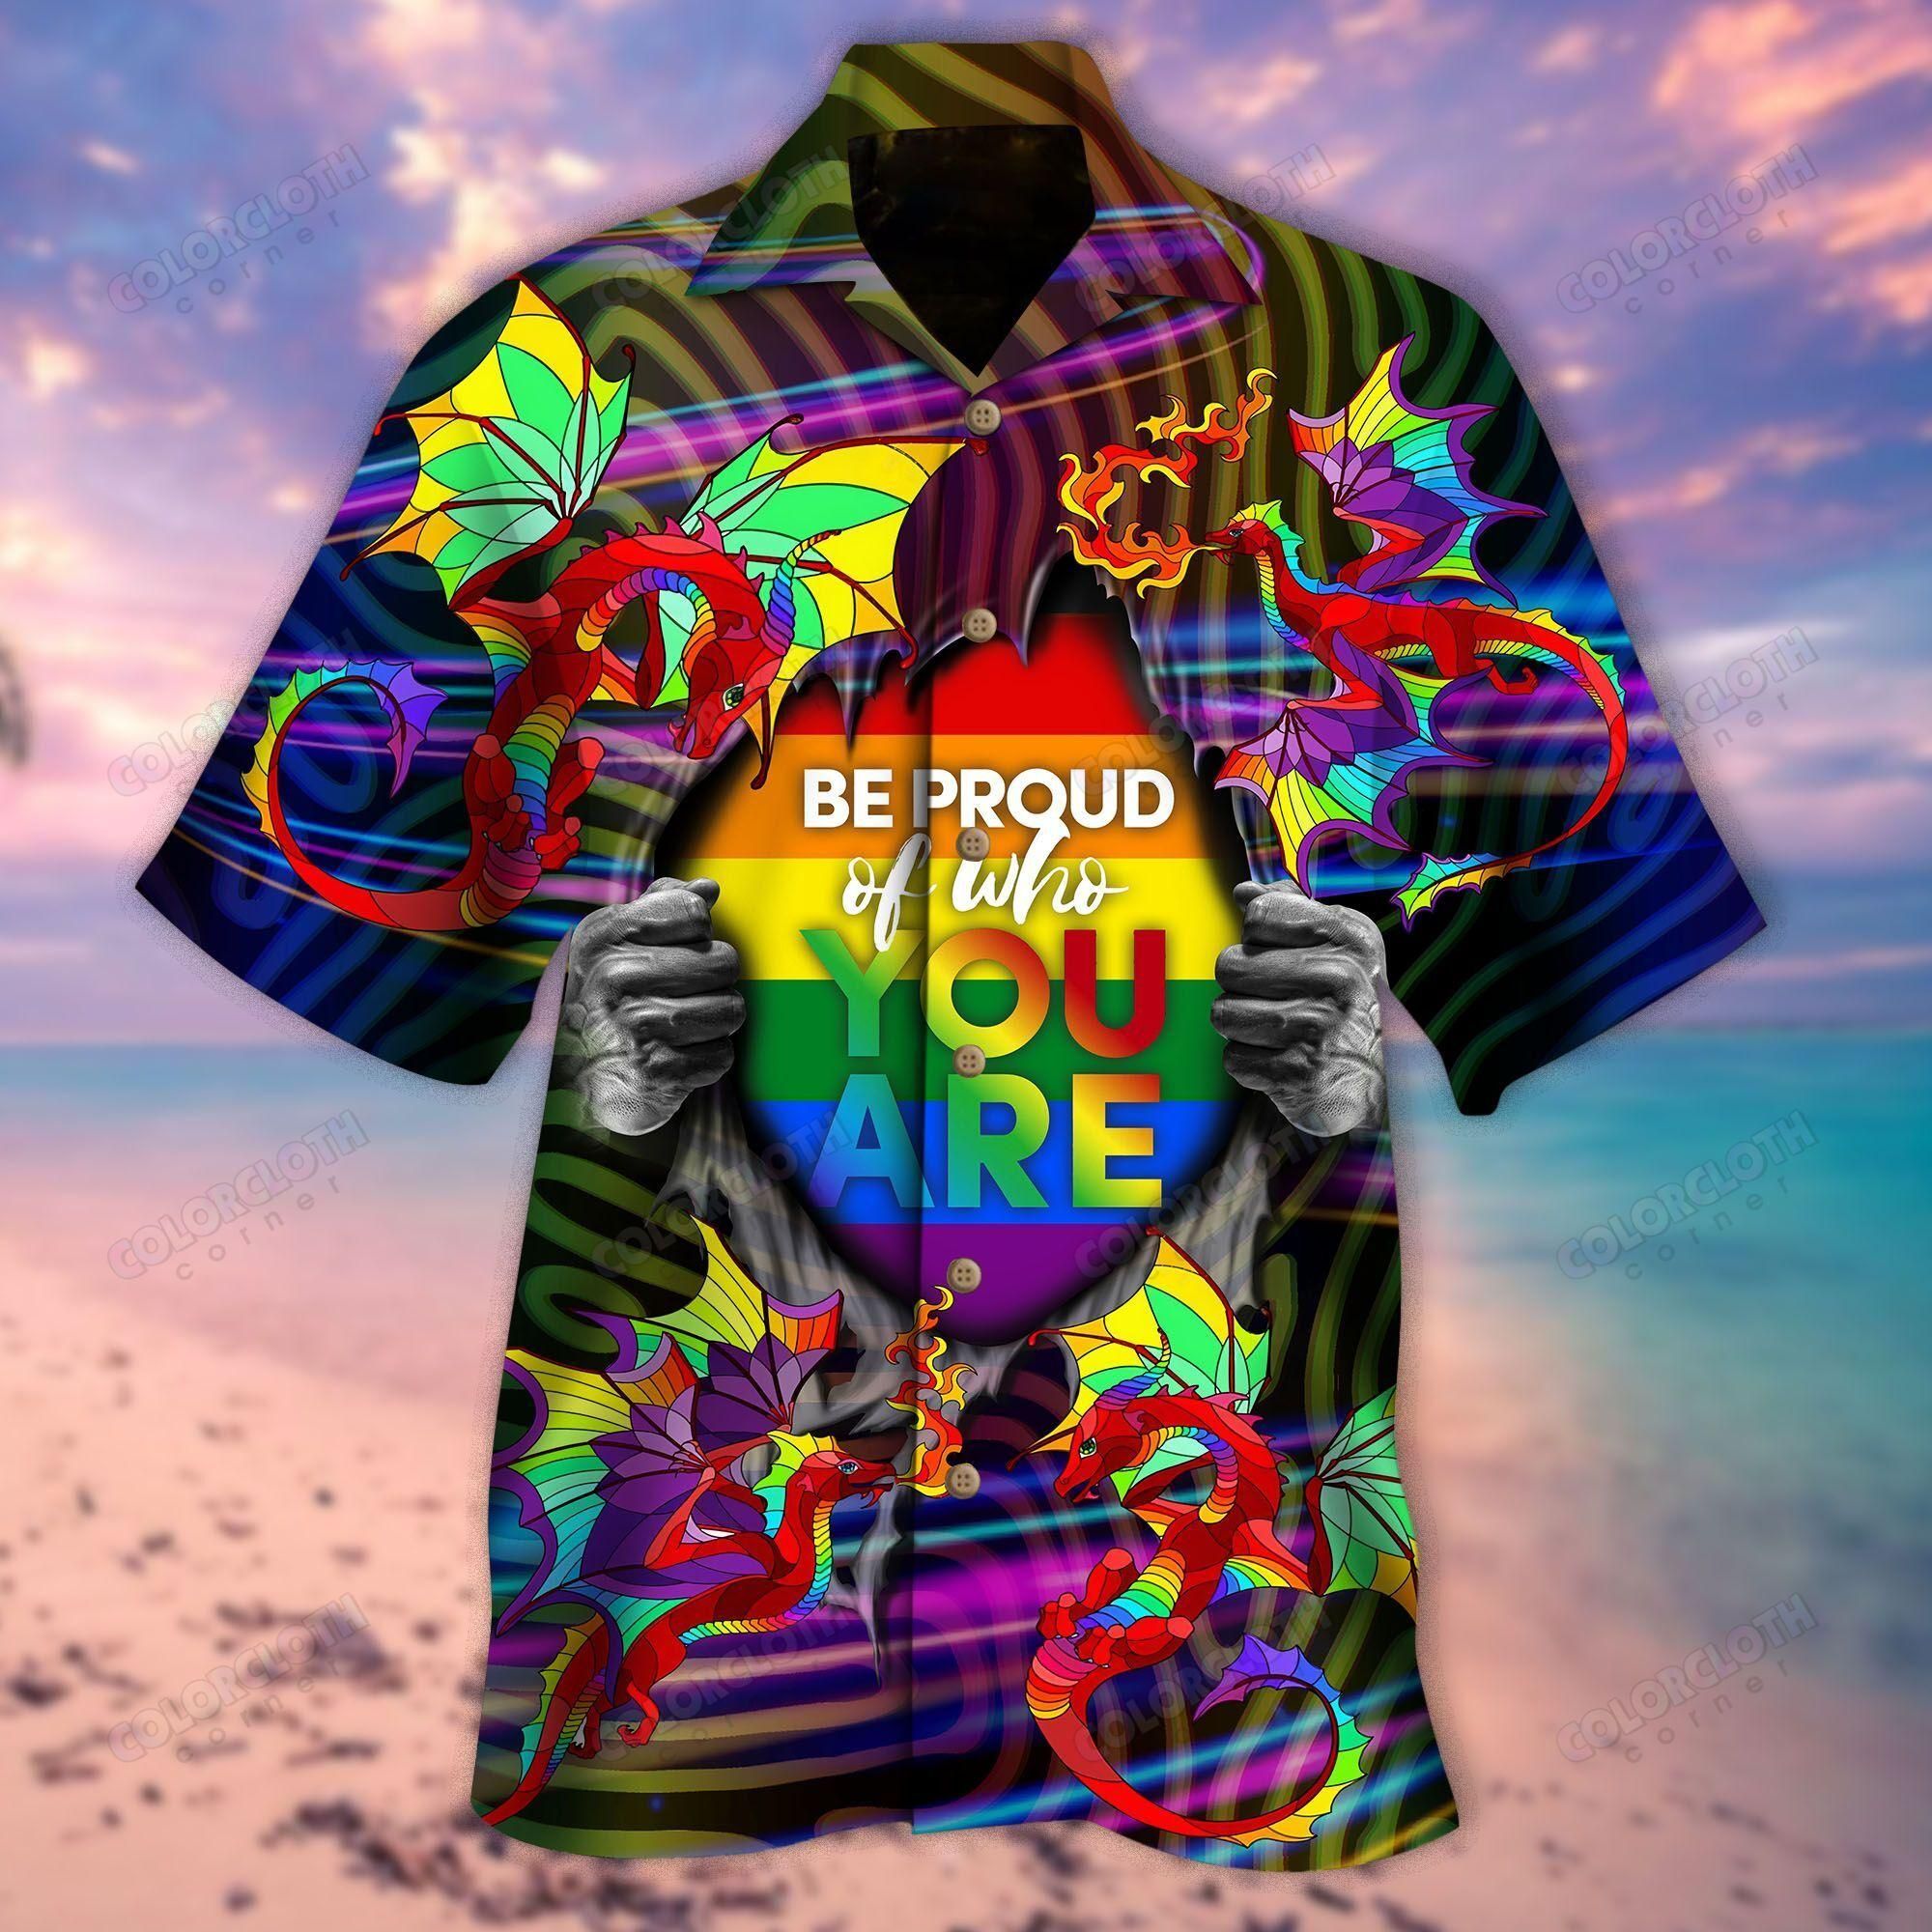 kurobase-amazing-rainbow-dragon-lgbt-unisex-hawaii-shirt-hawaiian-shirt.jpeg